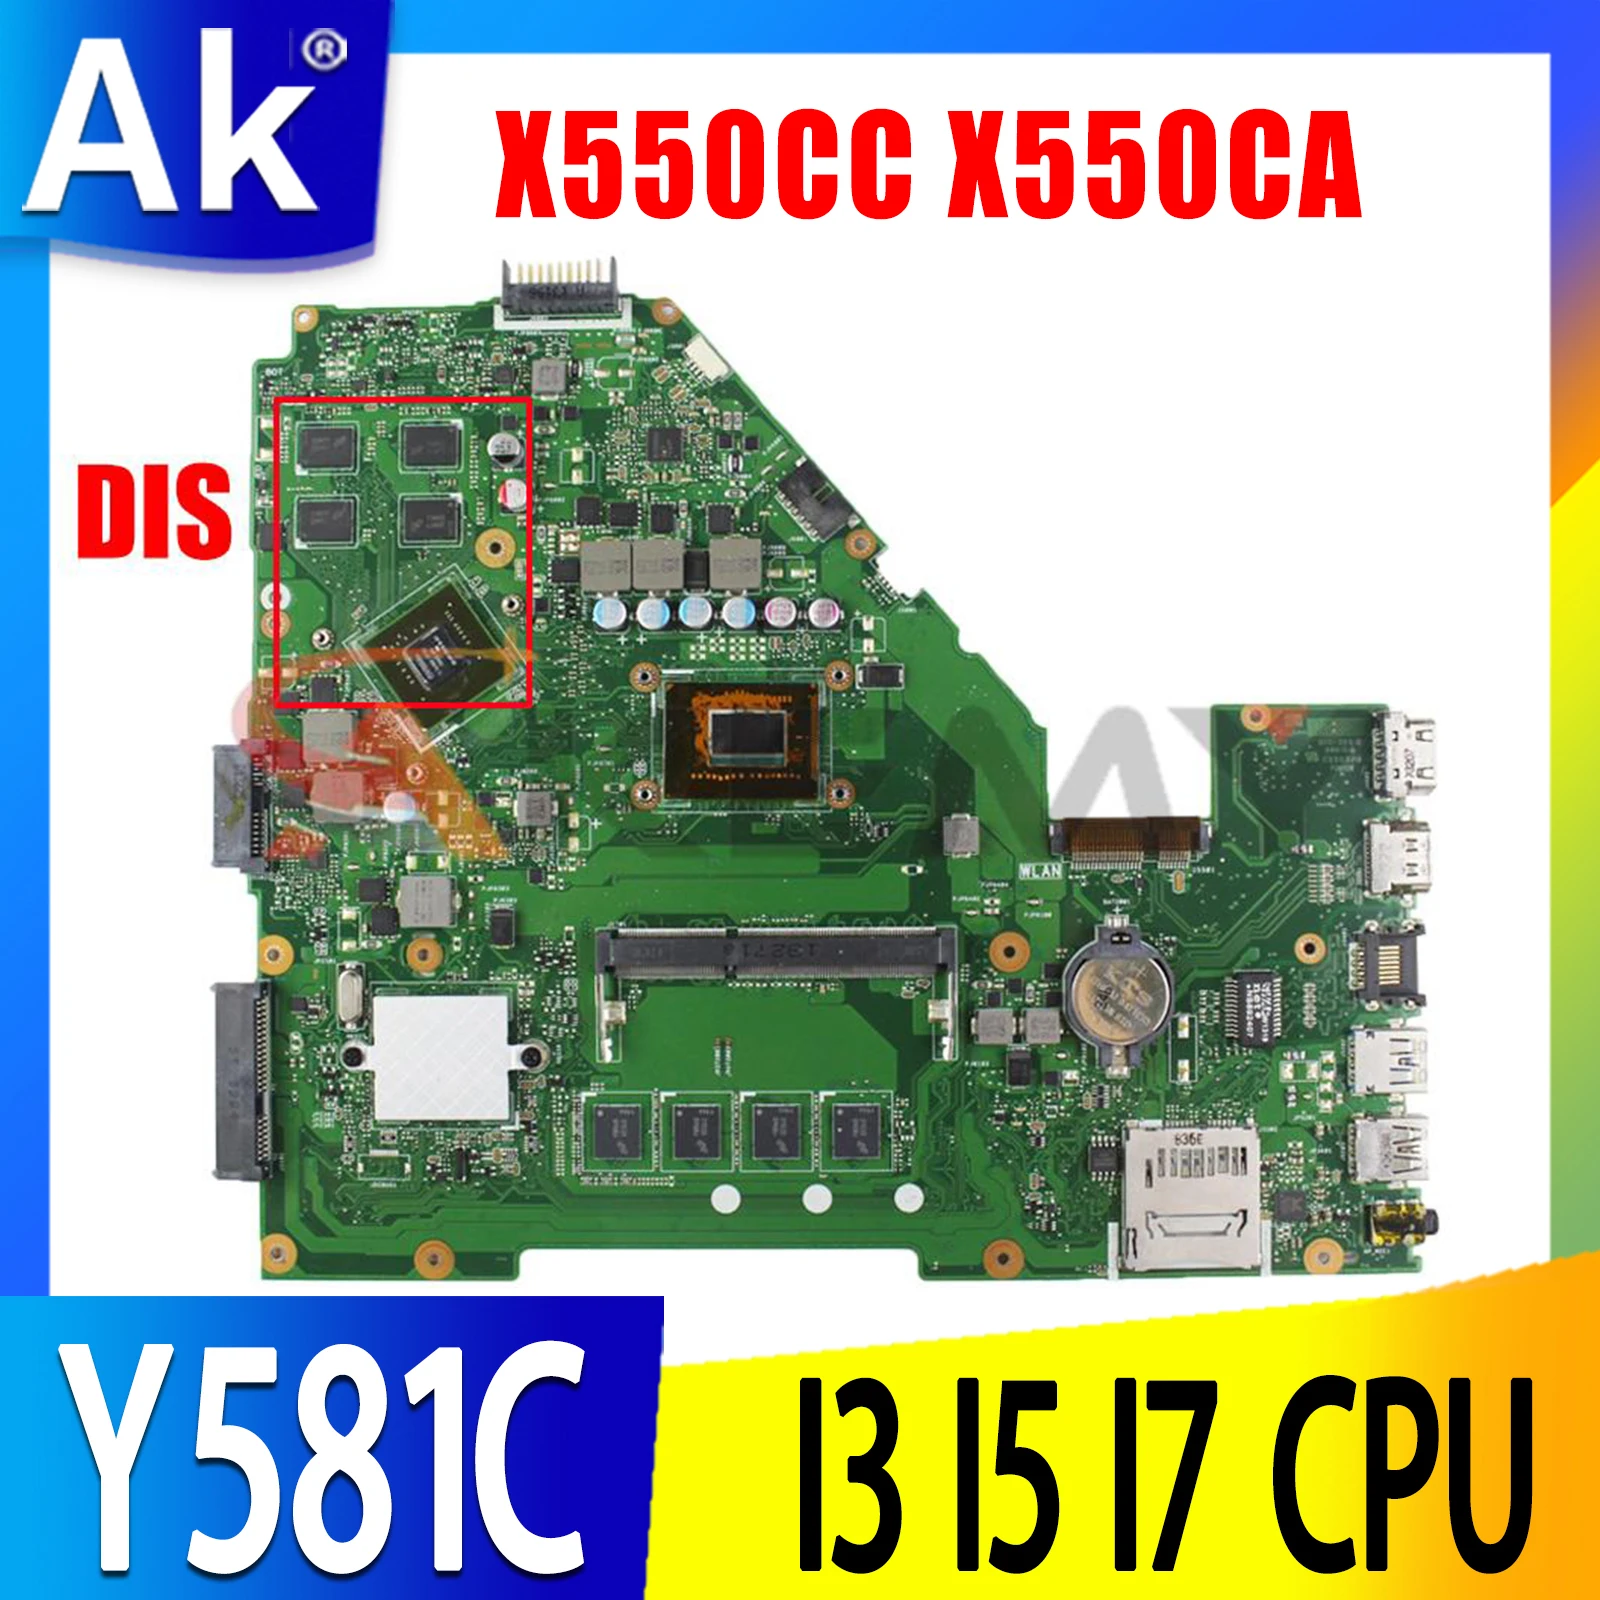 

X550CC X550CA Motherboard 4GB RAM 1007U I3 I5 I7 CPU GT720M GPU for ASUS Y581C X552C X550C X550CL A550C K550C Laotop Mainboard